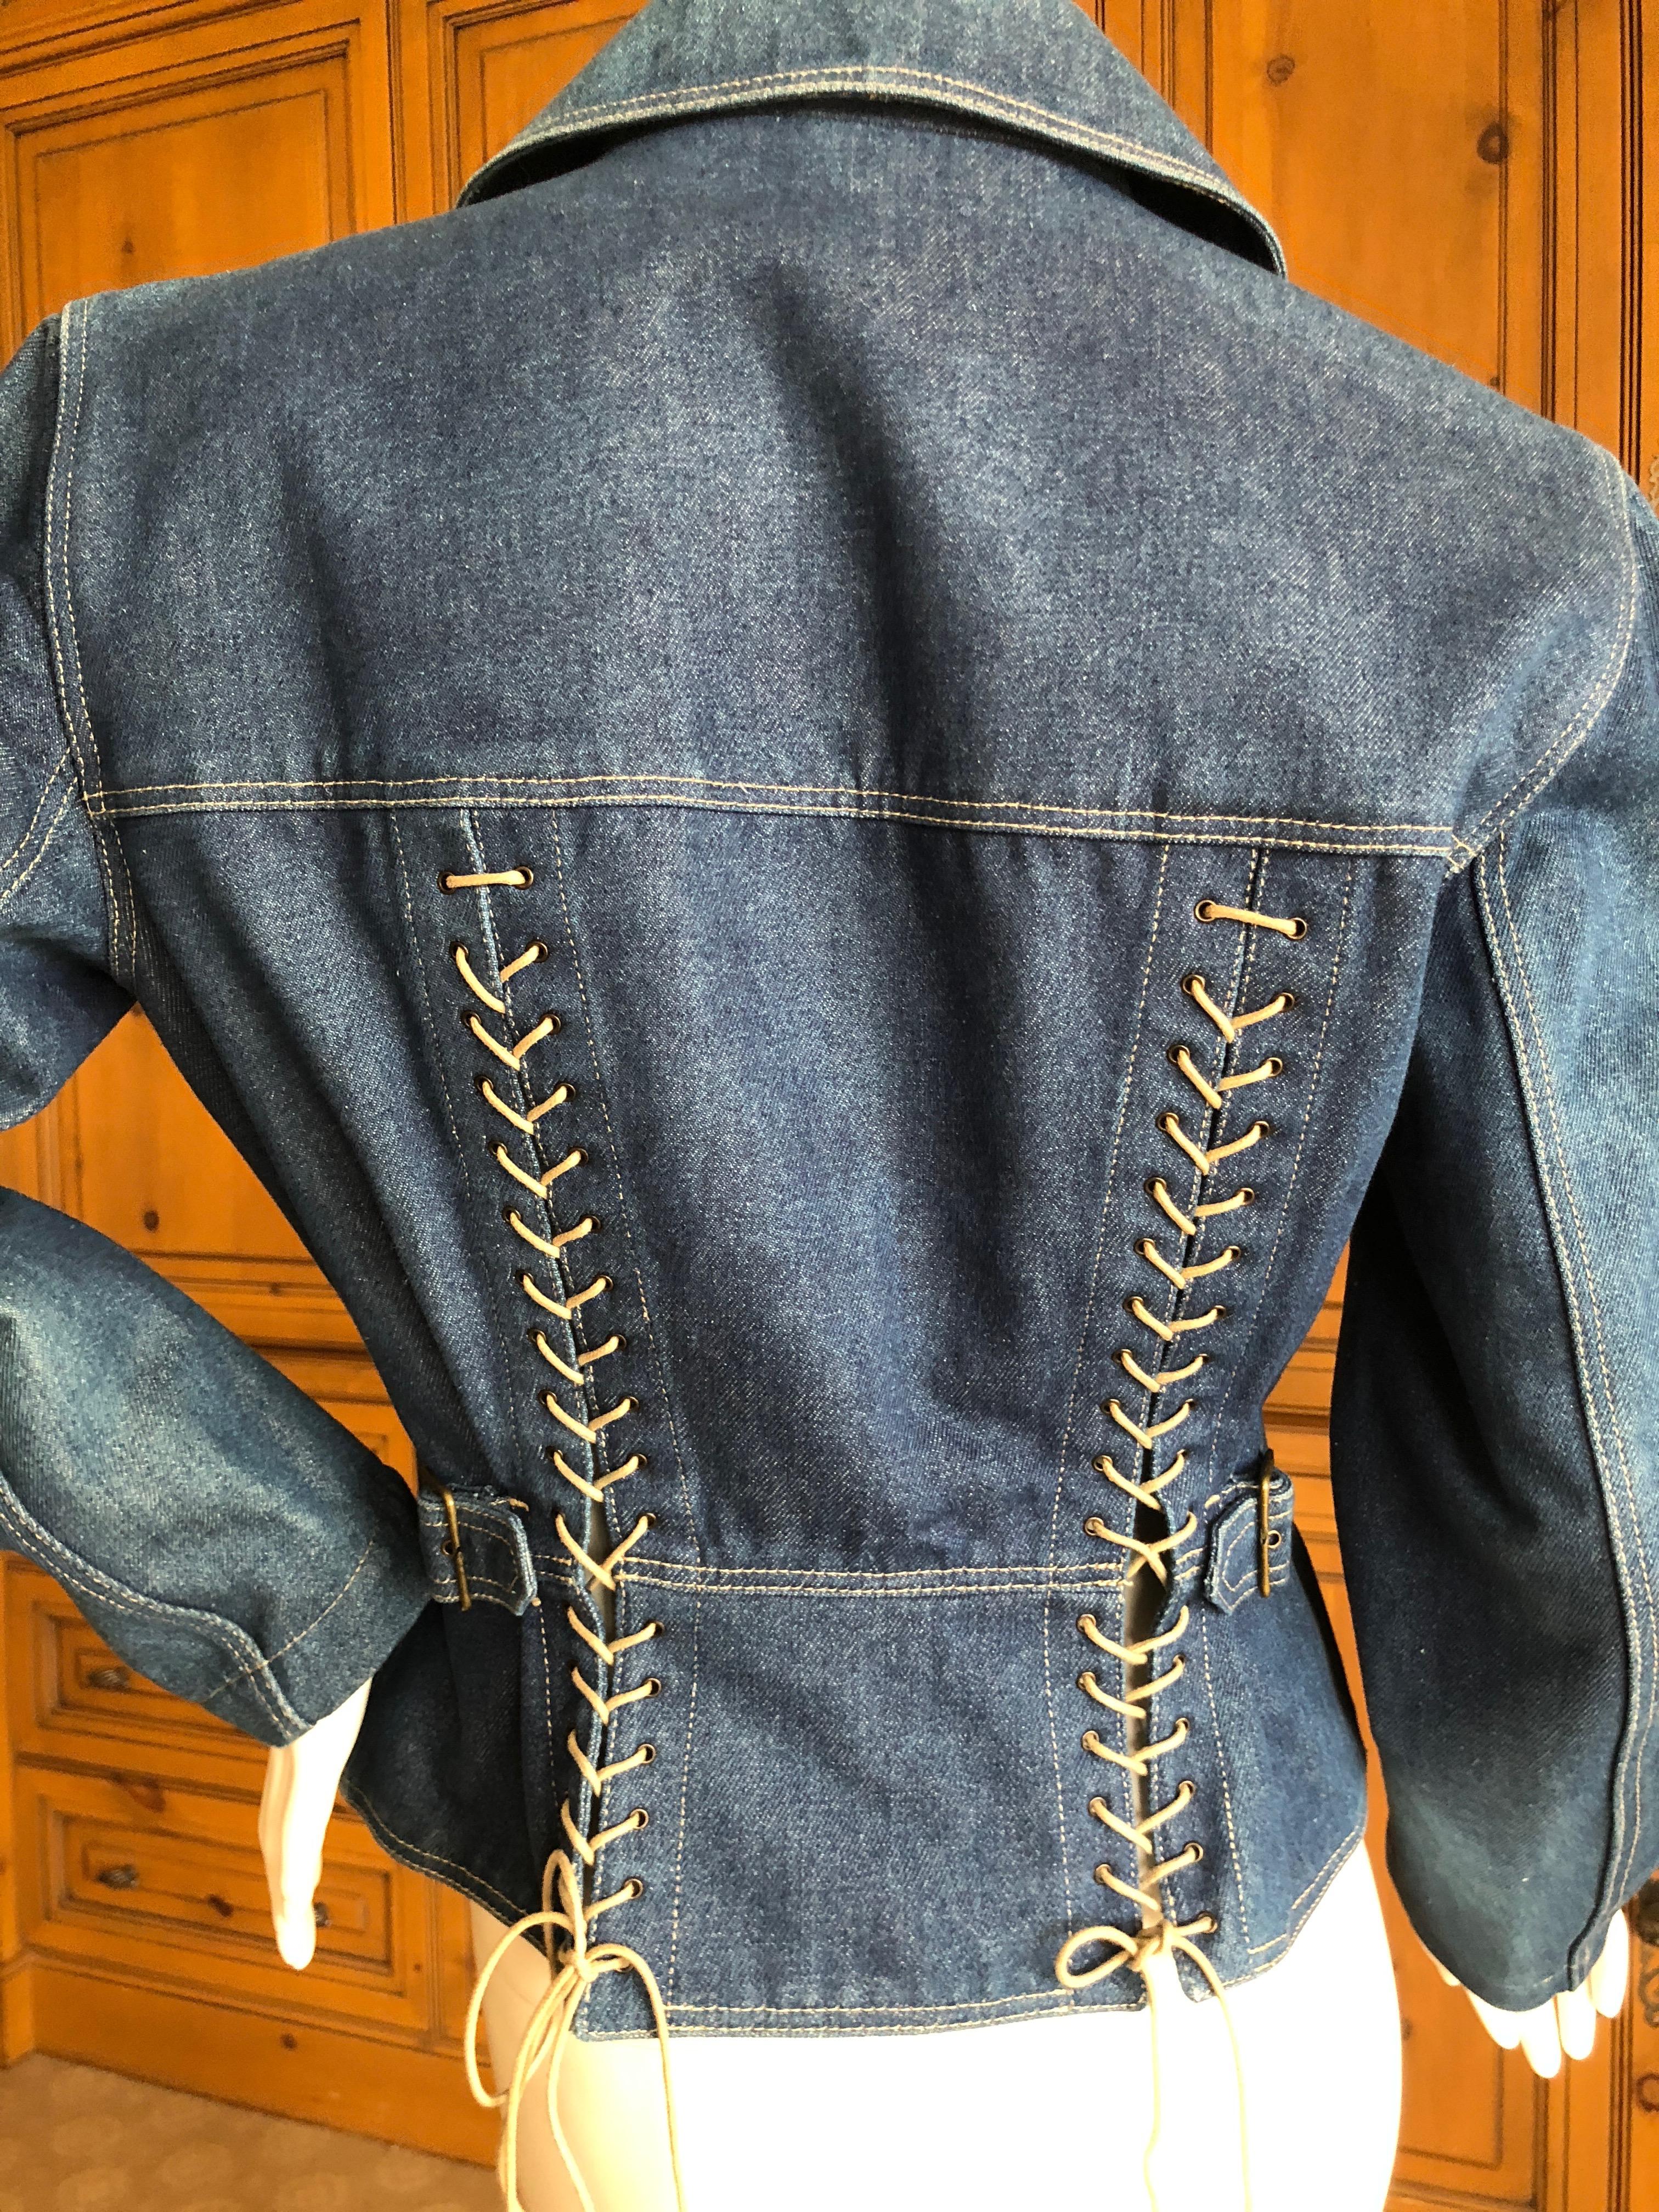 Rare Azzedine Alaia Pristine 1984 Corset Lace Denim Blue Jean Jacket, in pristine condition.
No size tag, appx Size 38-40
Bust 42